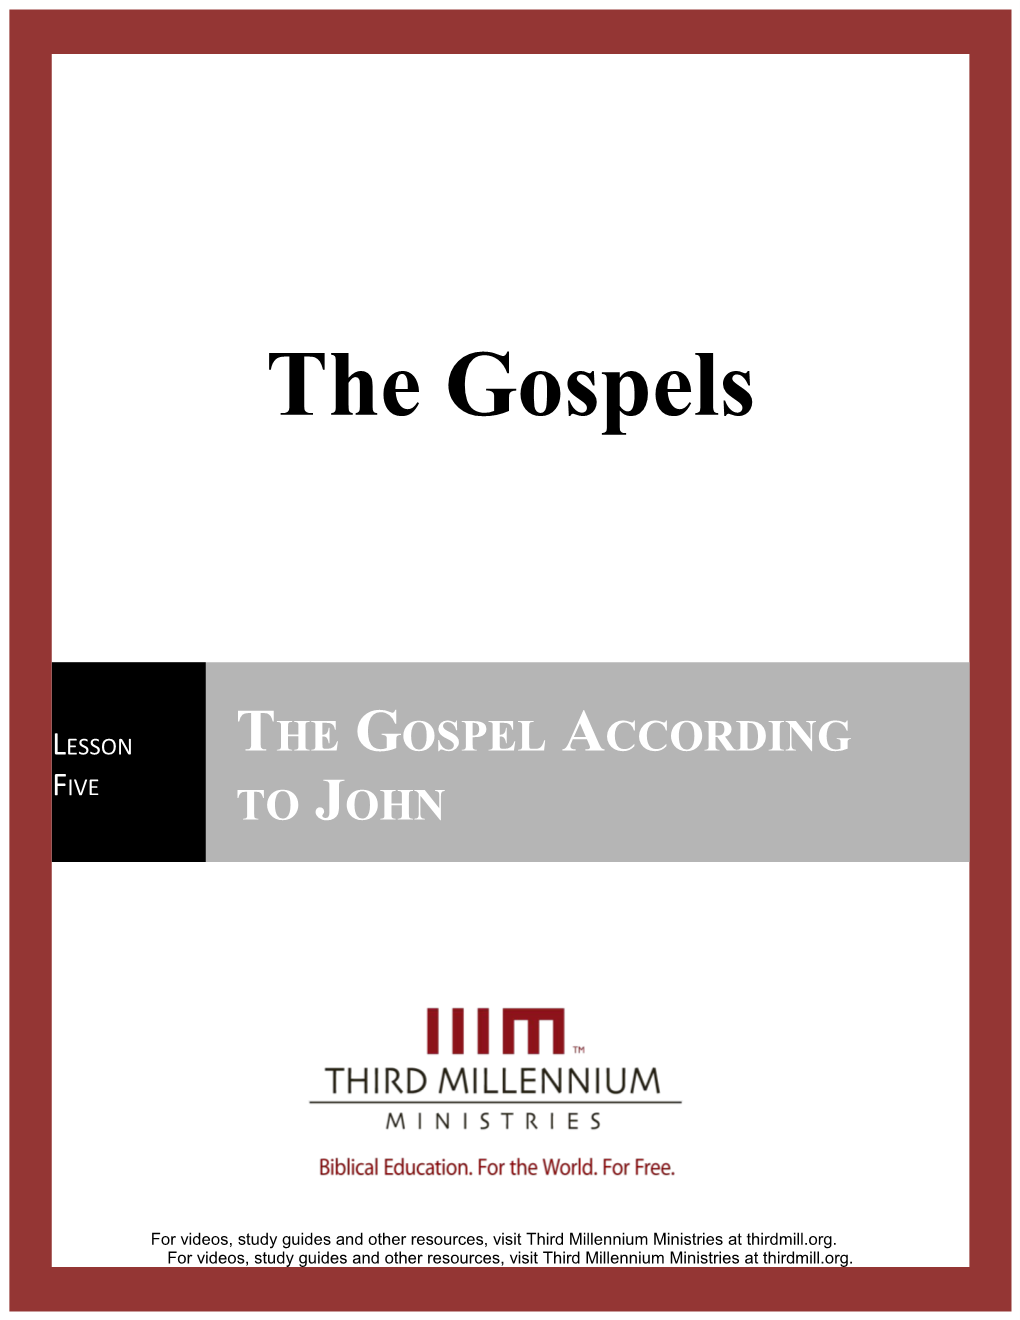 The Gospels, Lesson 5